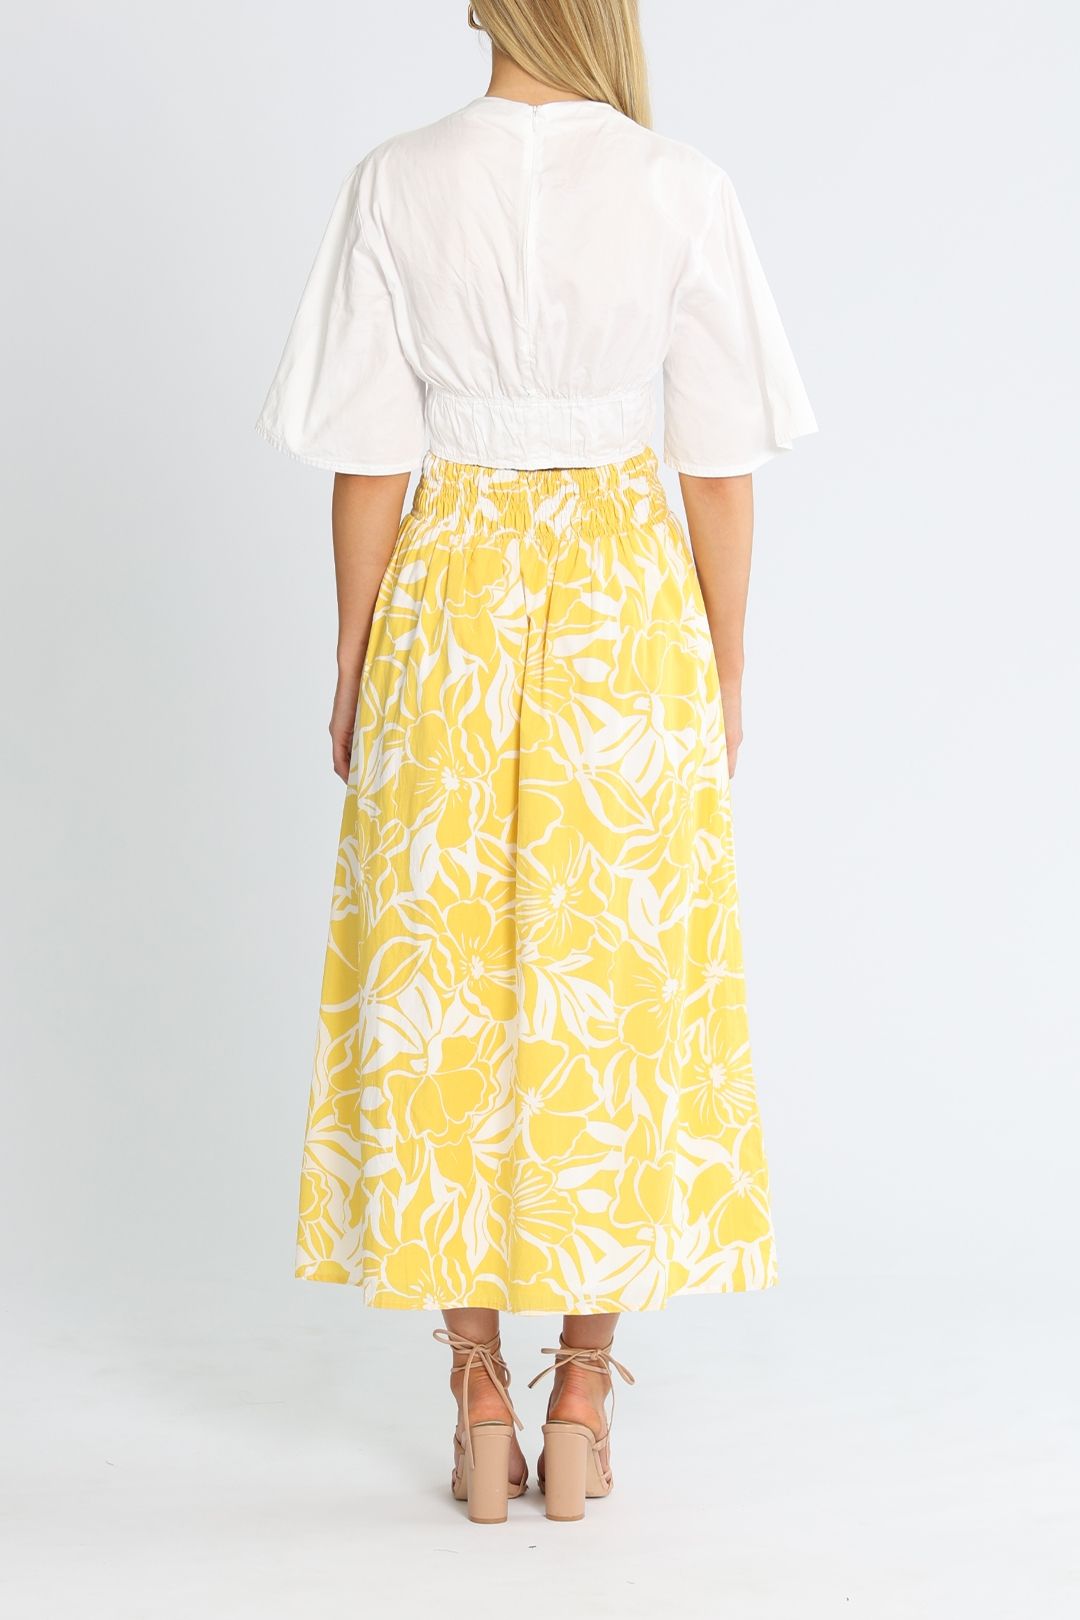 Faithfull Kiera Skirt Yellow midi